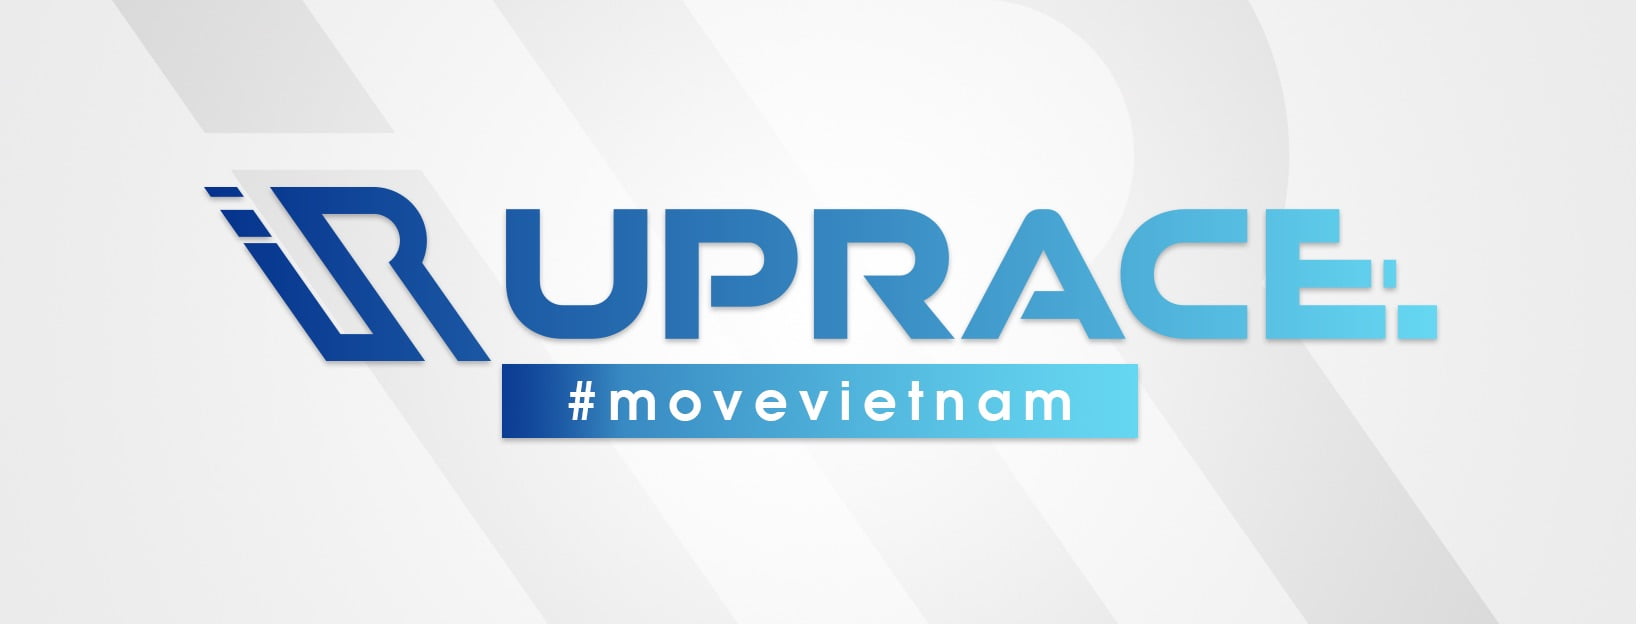 Hướng dẫn đăng ký tham gia UpRace 2019 - Viết tiếp giấc mơ - uprace 2019